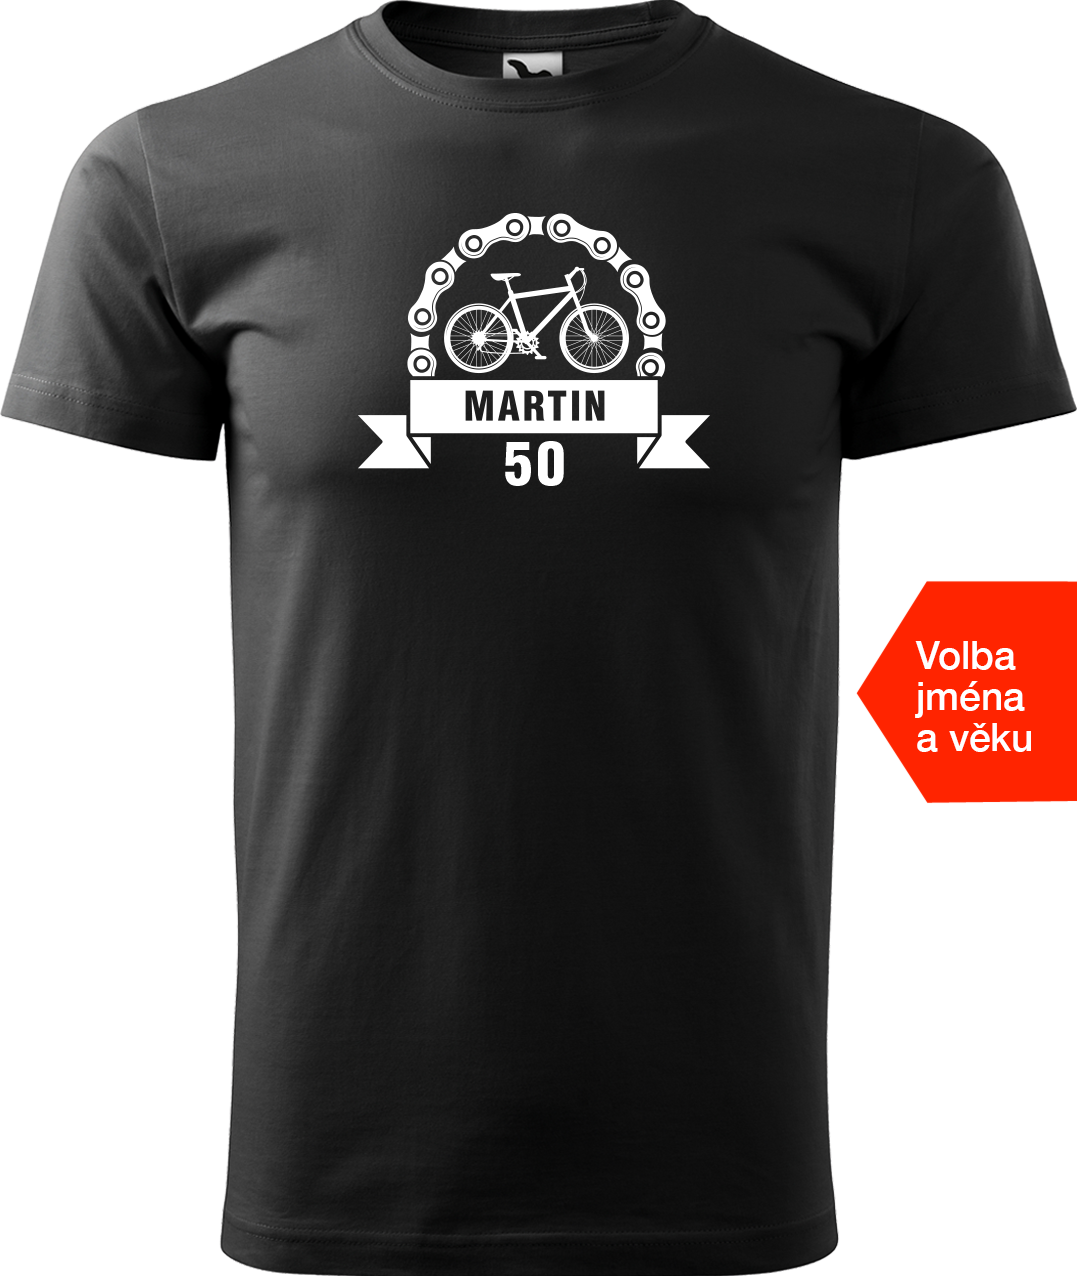 Pánské tričko pro cyklistu se jménem a věkem - Blahopřání Velikost: S, Barva: Černá (01)